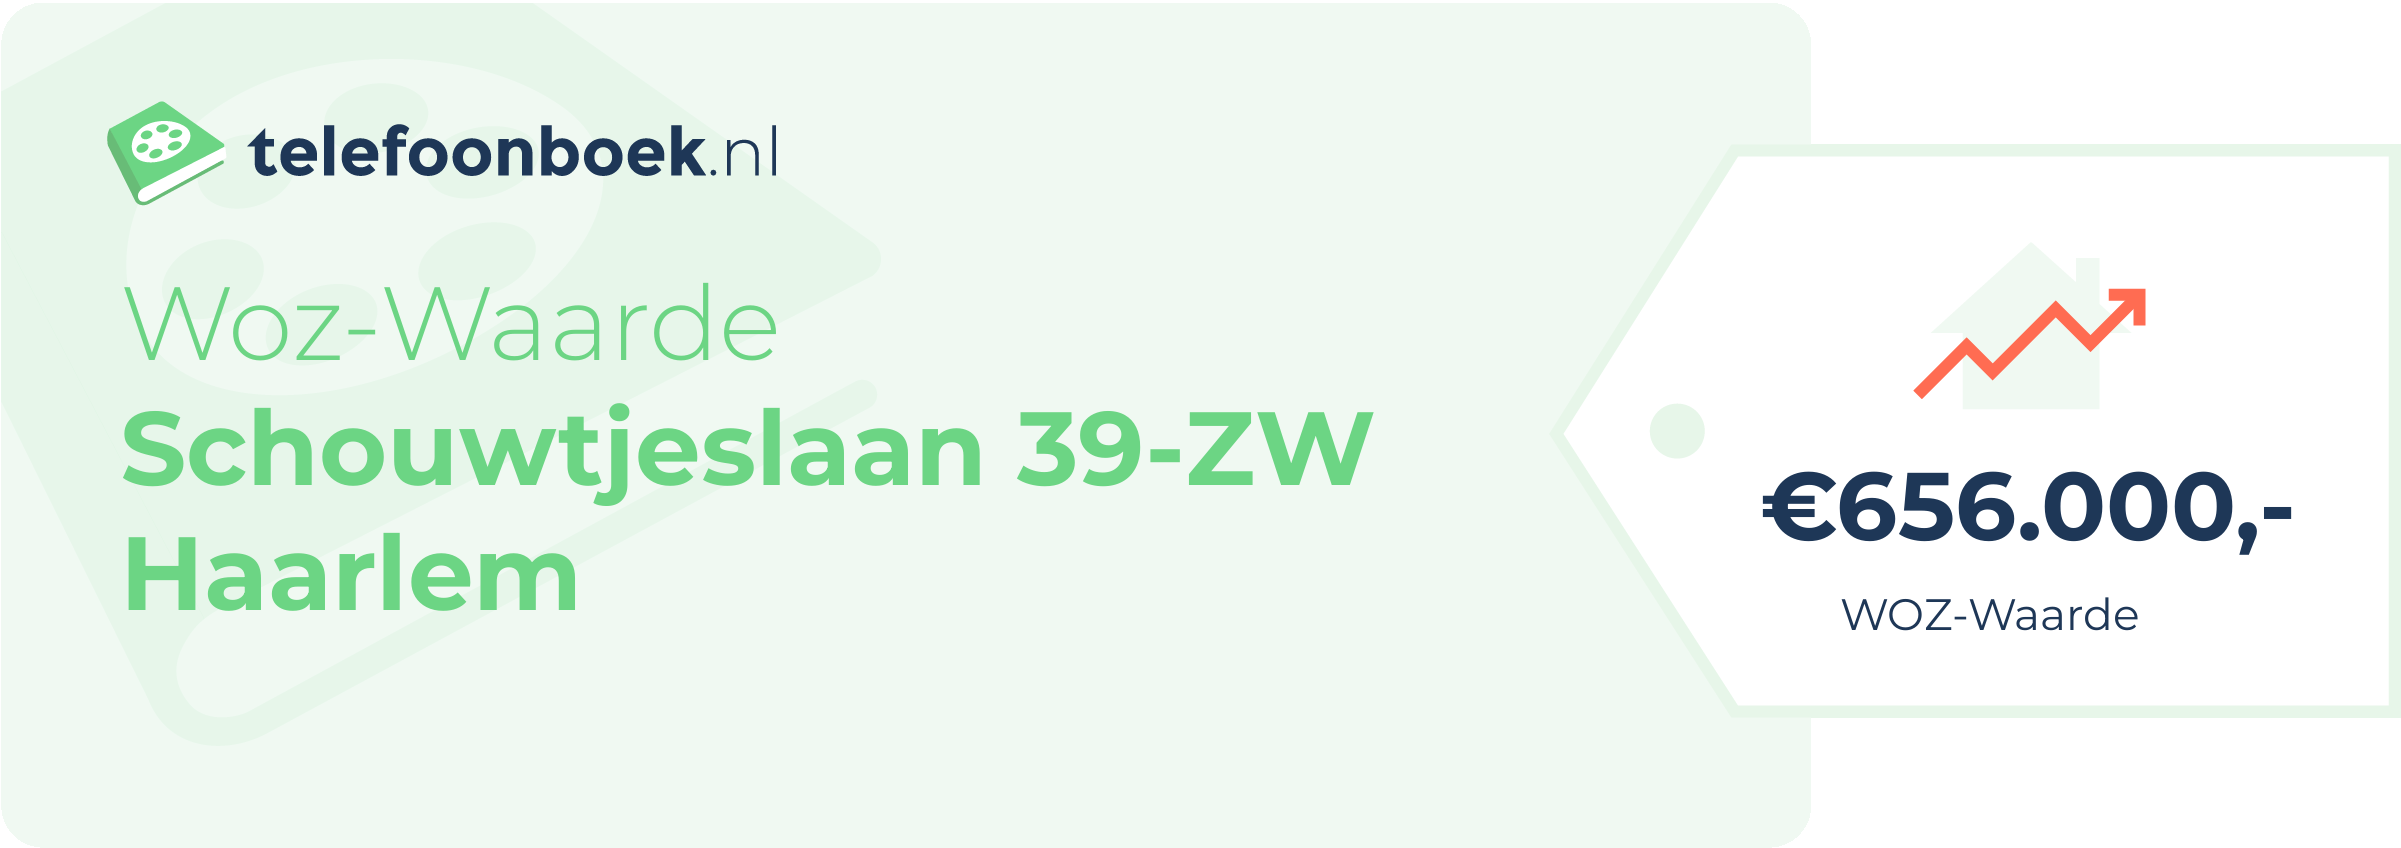 WOZ-waarde Schouwtjeslaan 39-ZW Haarlem